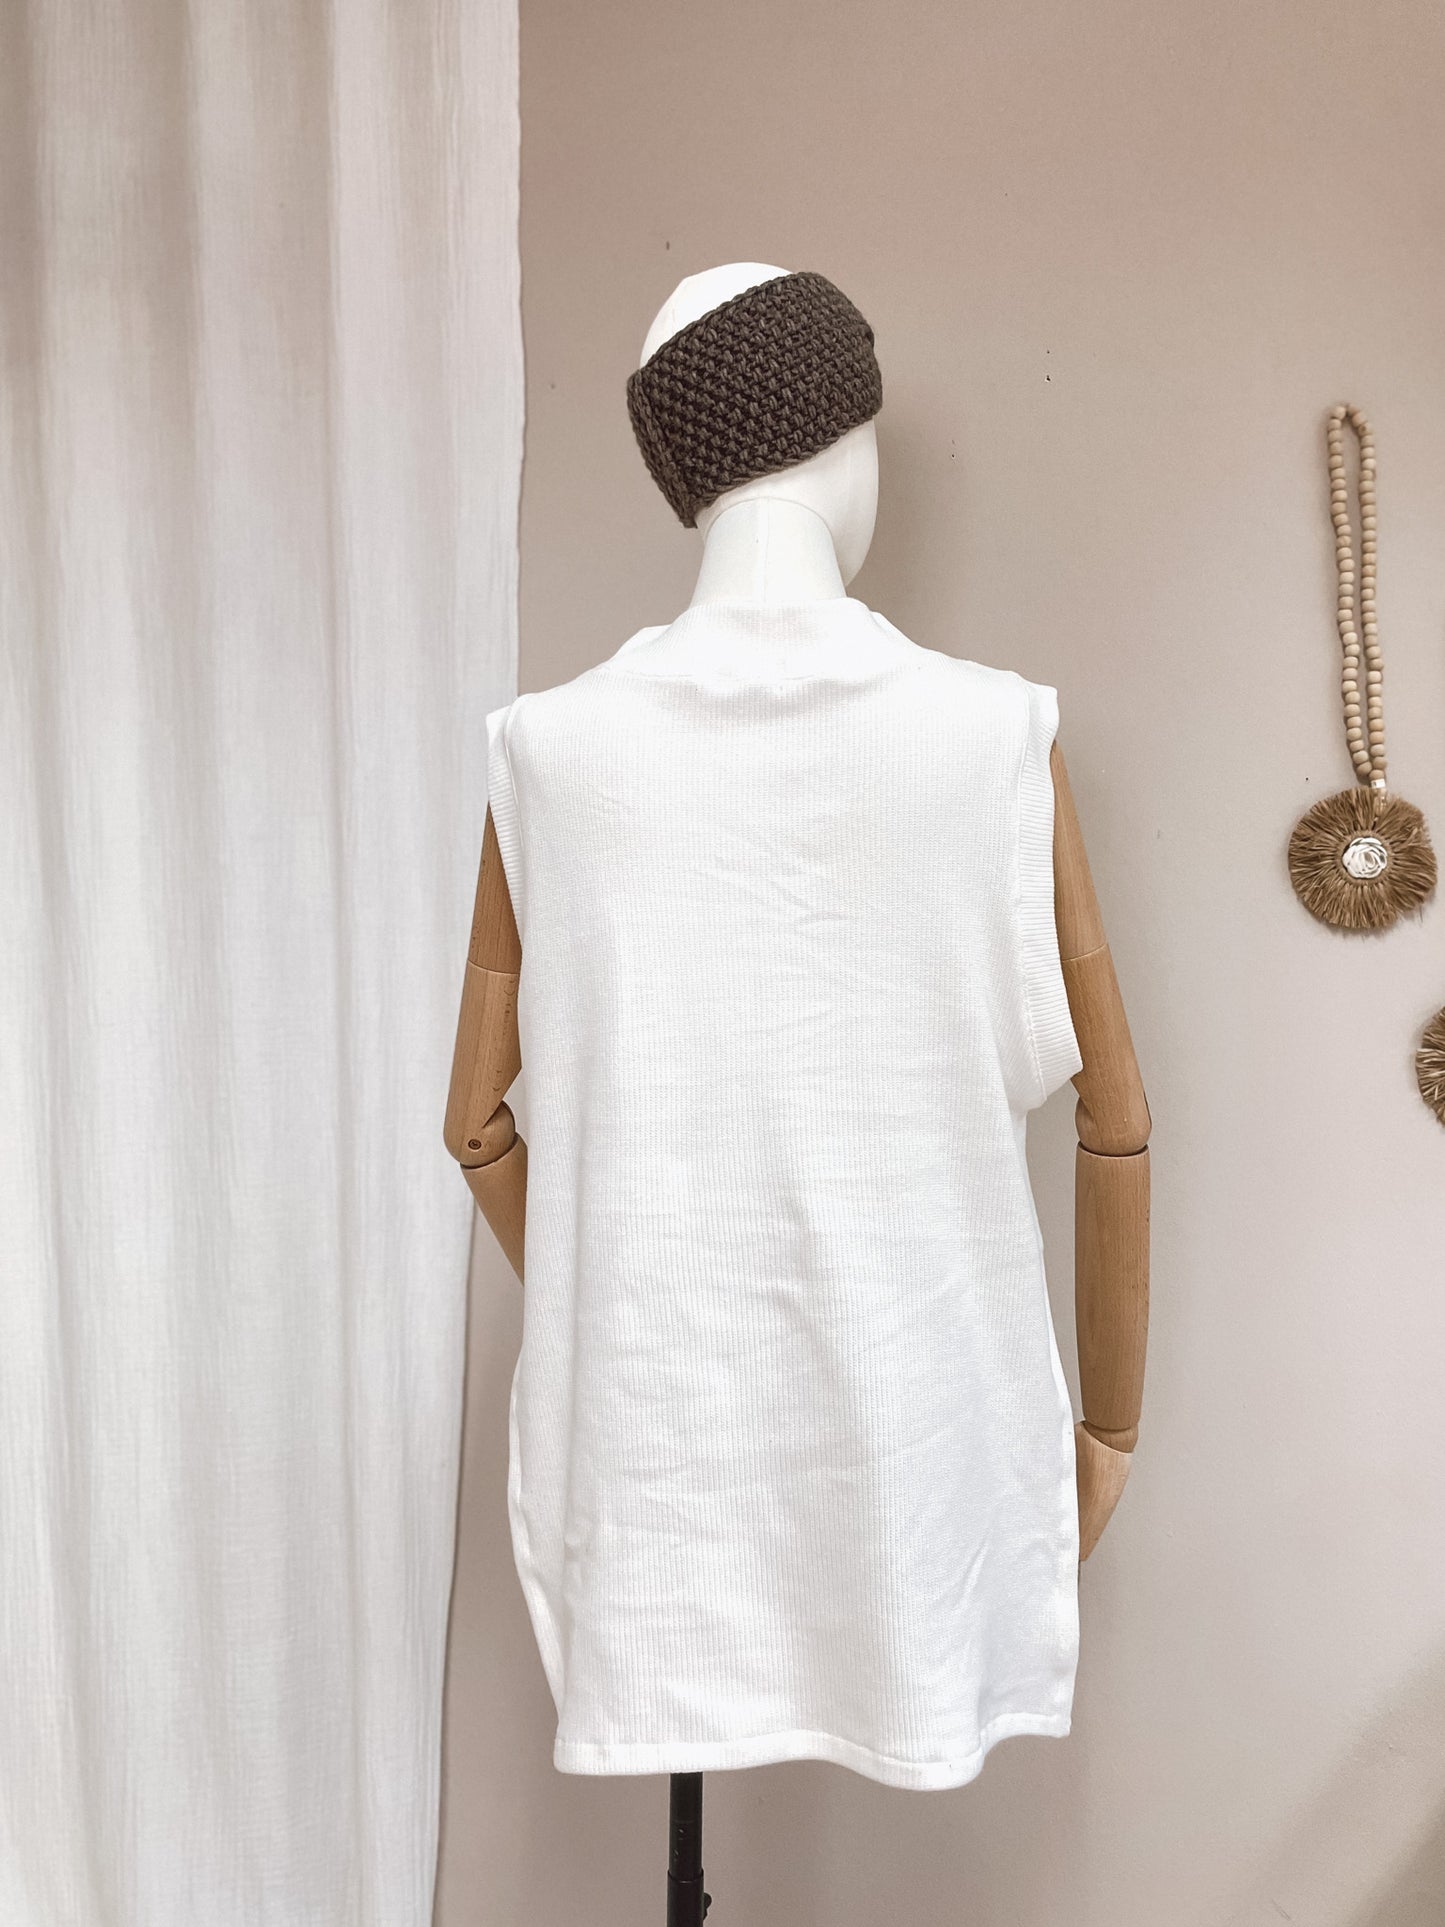 Oversized vest - cotton knit - ivory